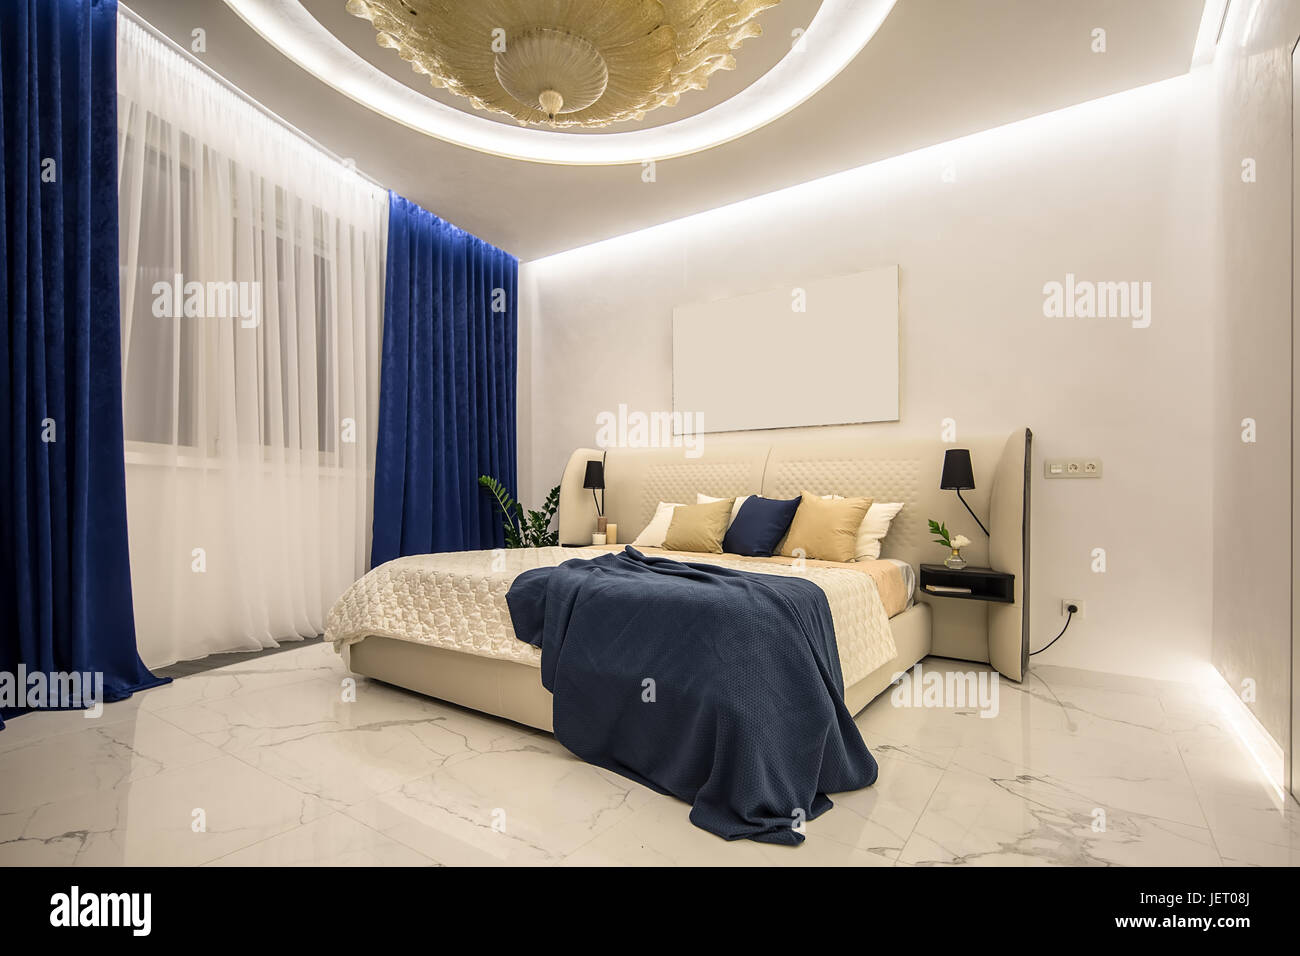 Chambre à coucher moderne éclairé par un grand lustre doré fantaisie sur le  plafond. Il y a un lit de couleur beige avec des oreillers multicolore et  d'un plaid bleu, étagères Photo